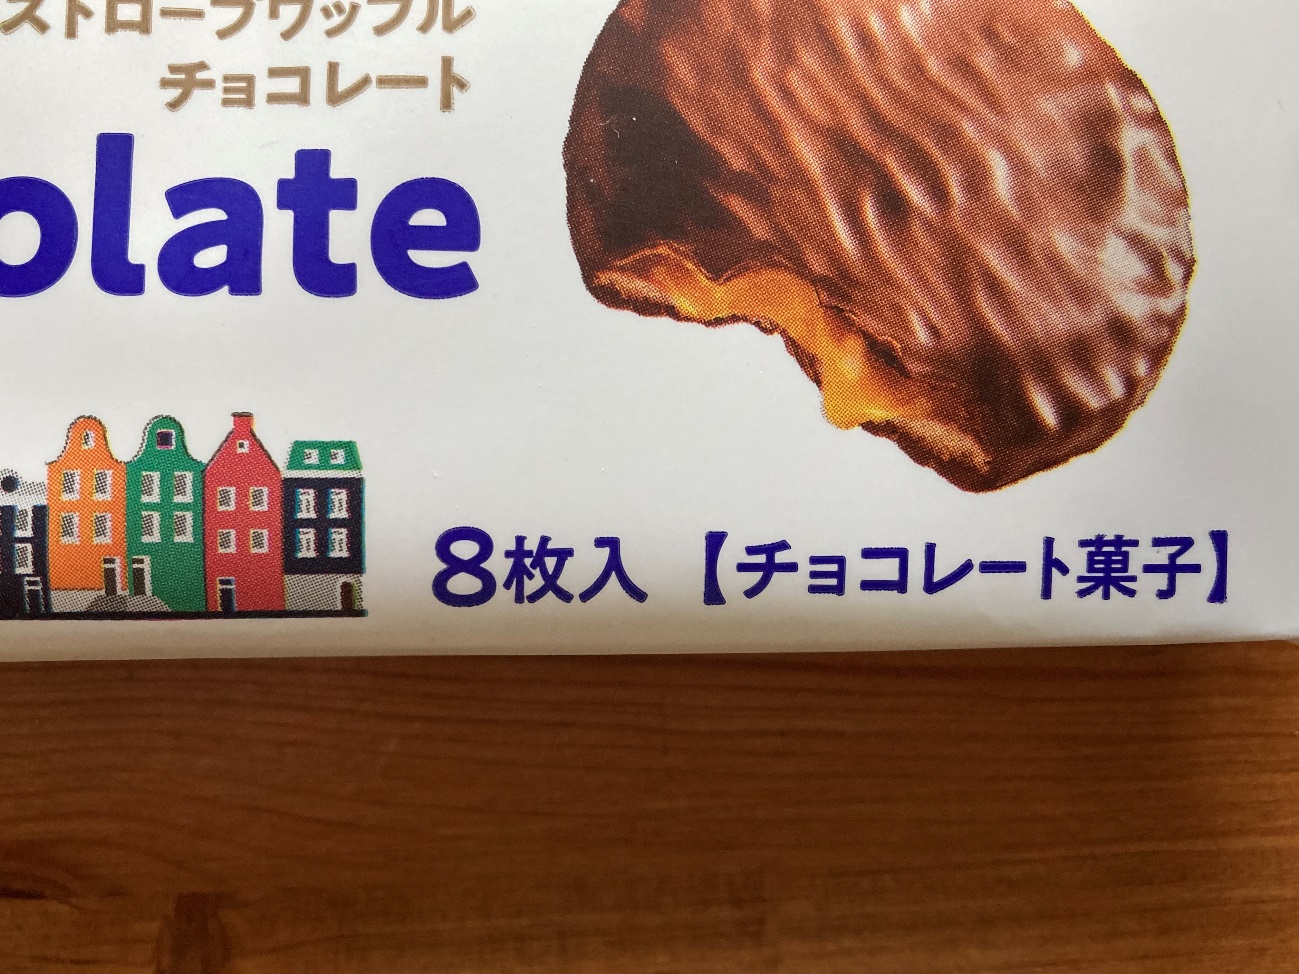 業務スーパーのストロープワッフルチョコレートの内容量8枚入の表記